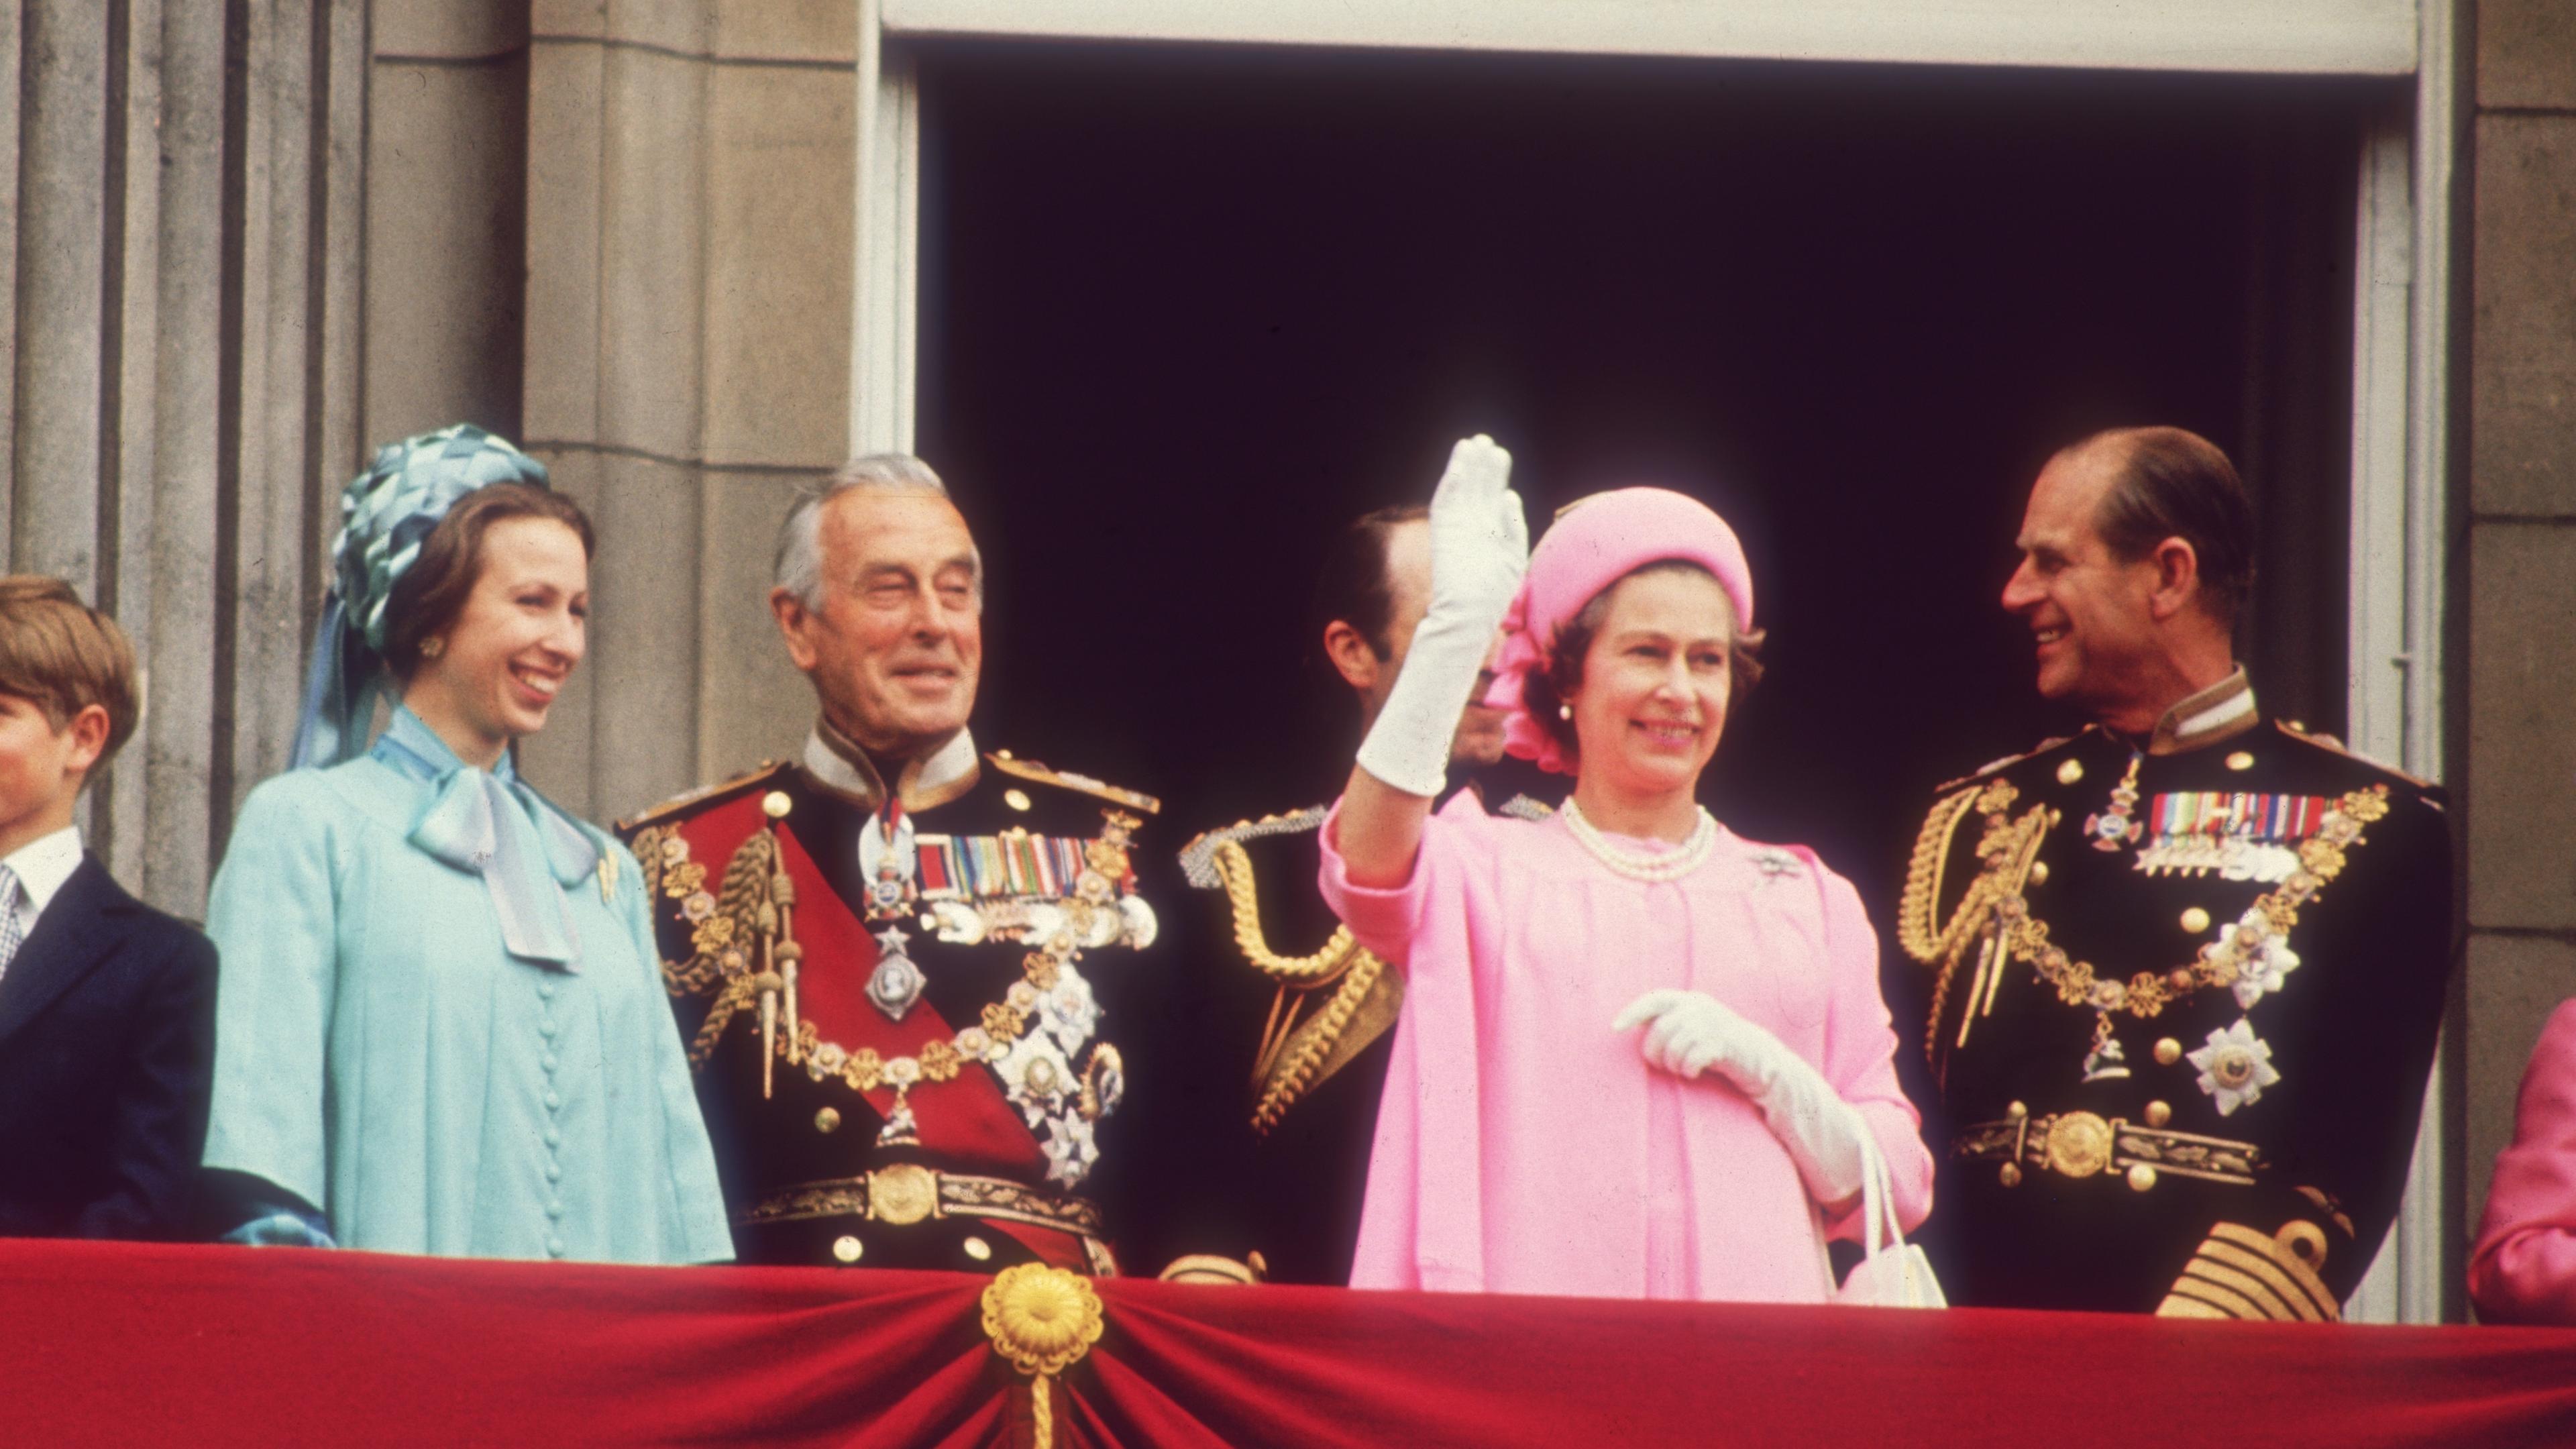  An einem Balkon, der mit einem roten Stoff dekoriert ist, stehen mehrere lächelnde Personen. Die Königin im rosafarbenen Kostüm grüßt mit der Hand.